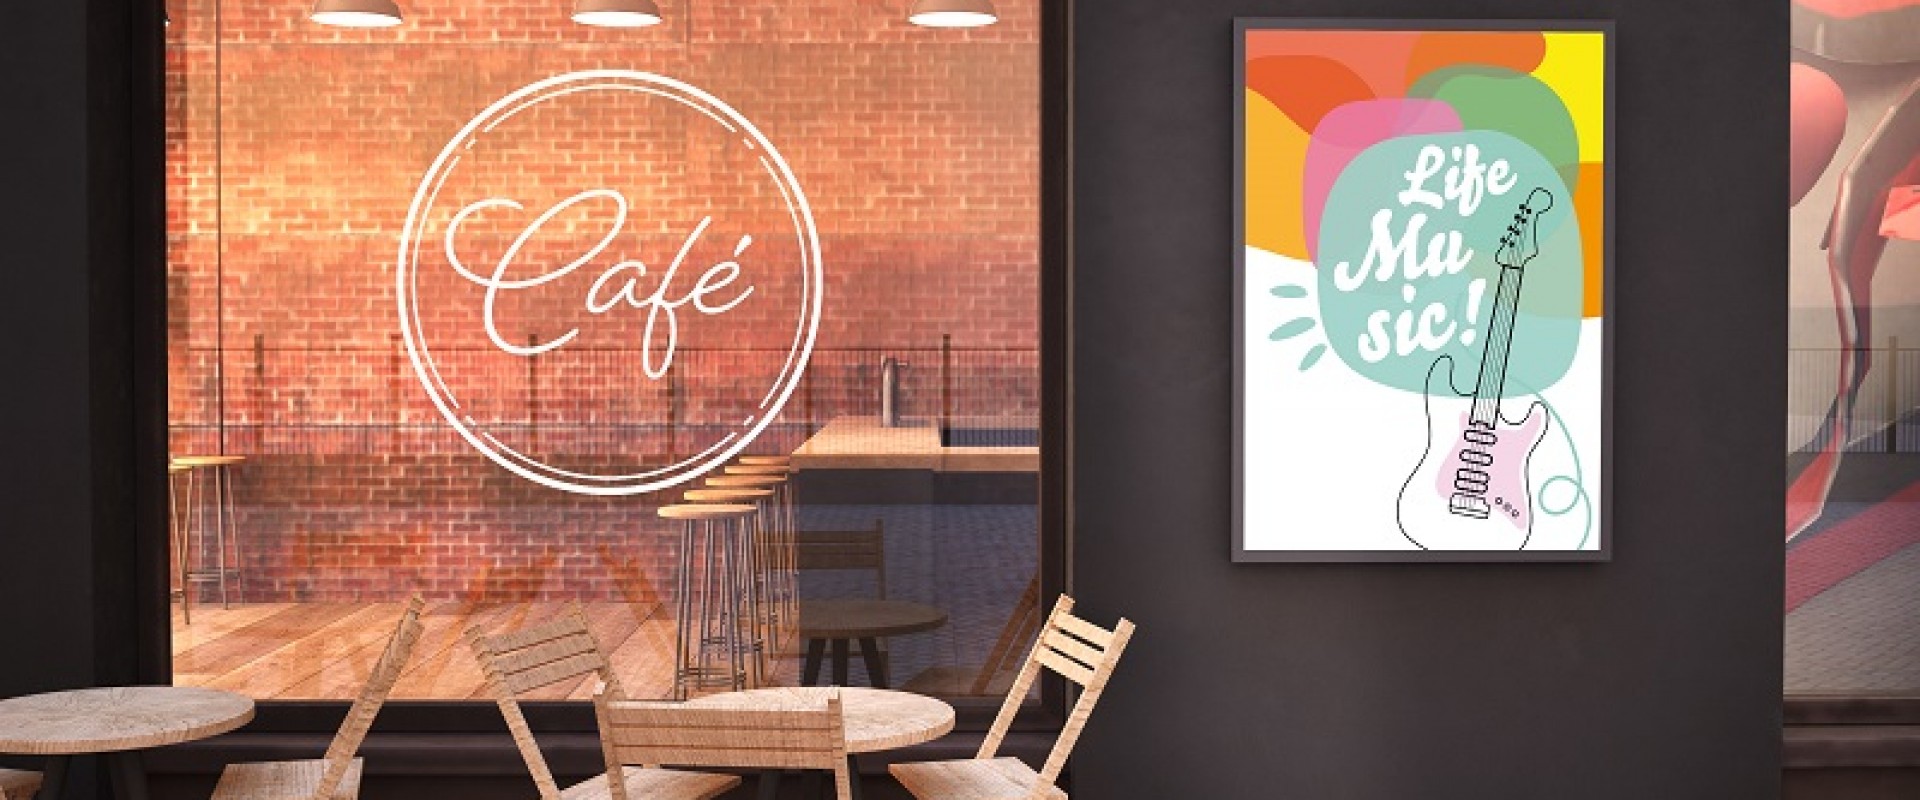 Как назвать кафе и нужно ли регистрировать товарный знак?